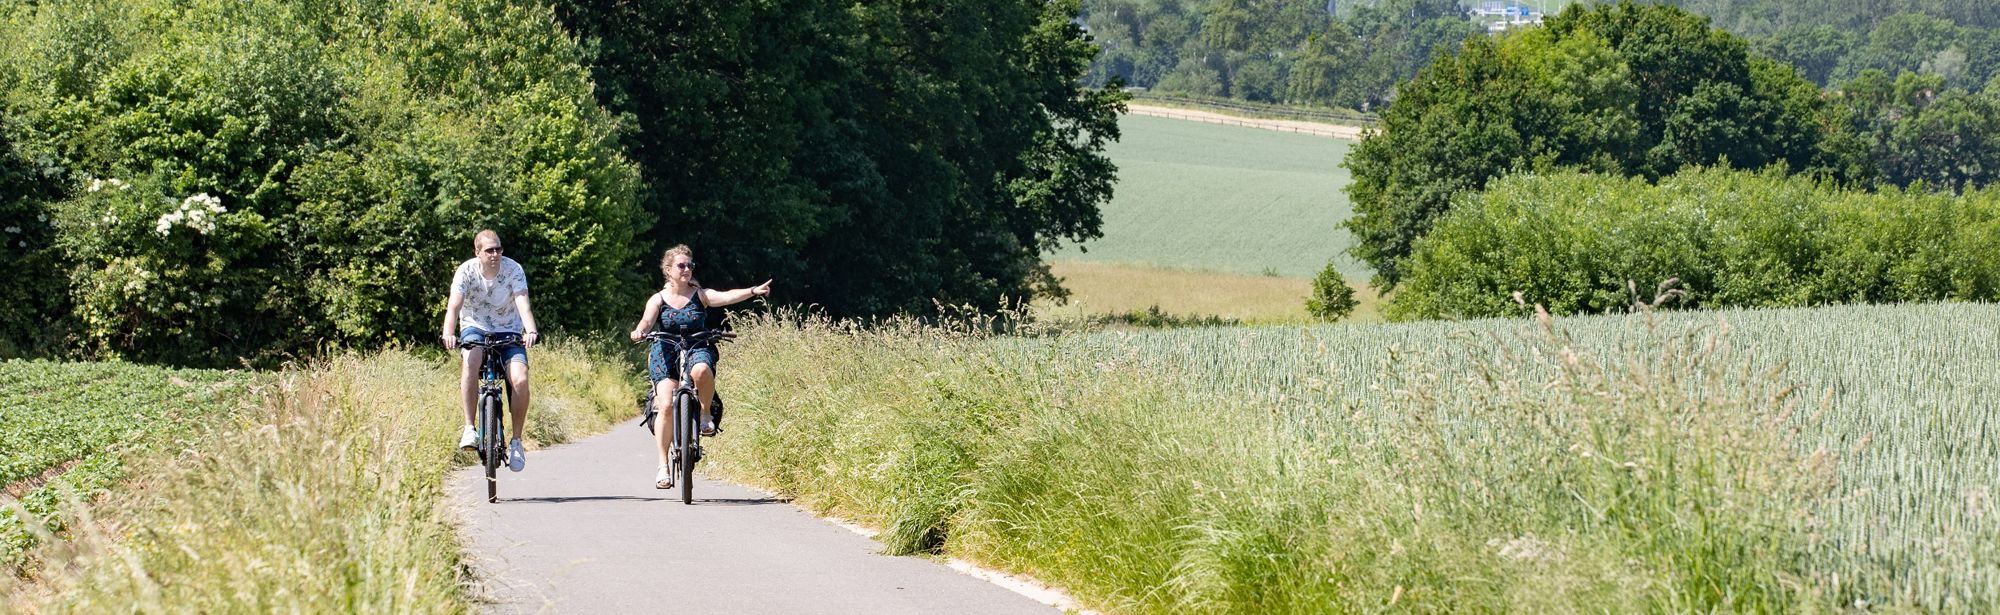 Een koppel fietst door het groene heuvellandschap en de vrouw wijst naar iets in de verte